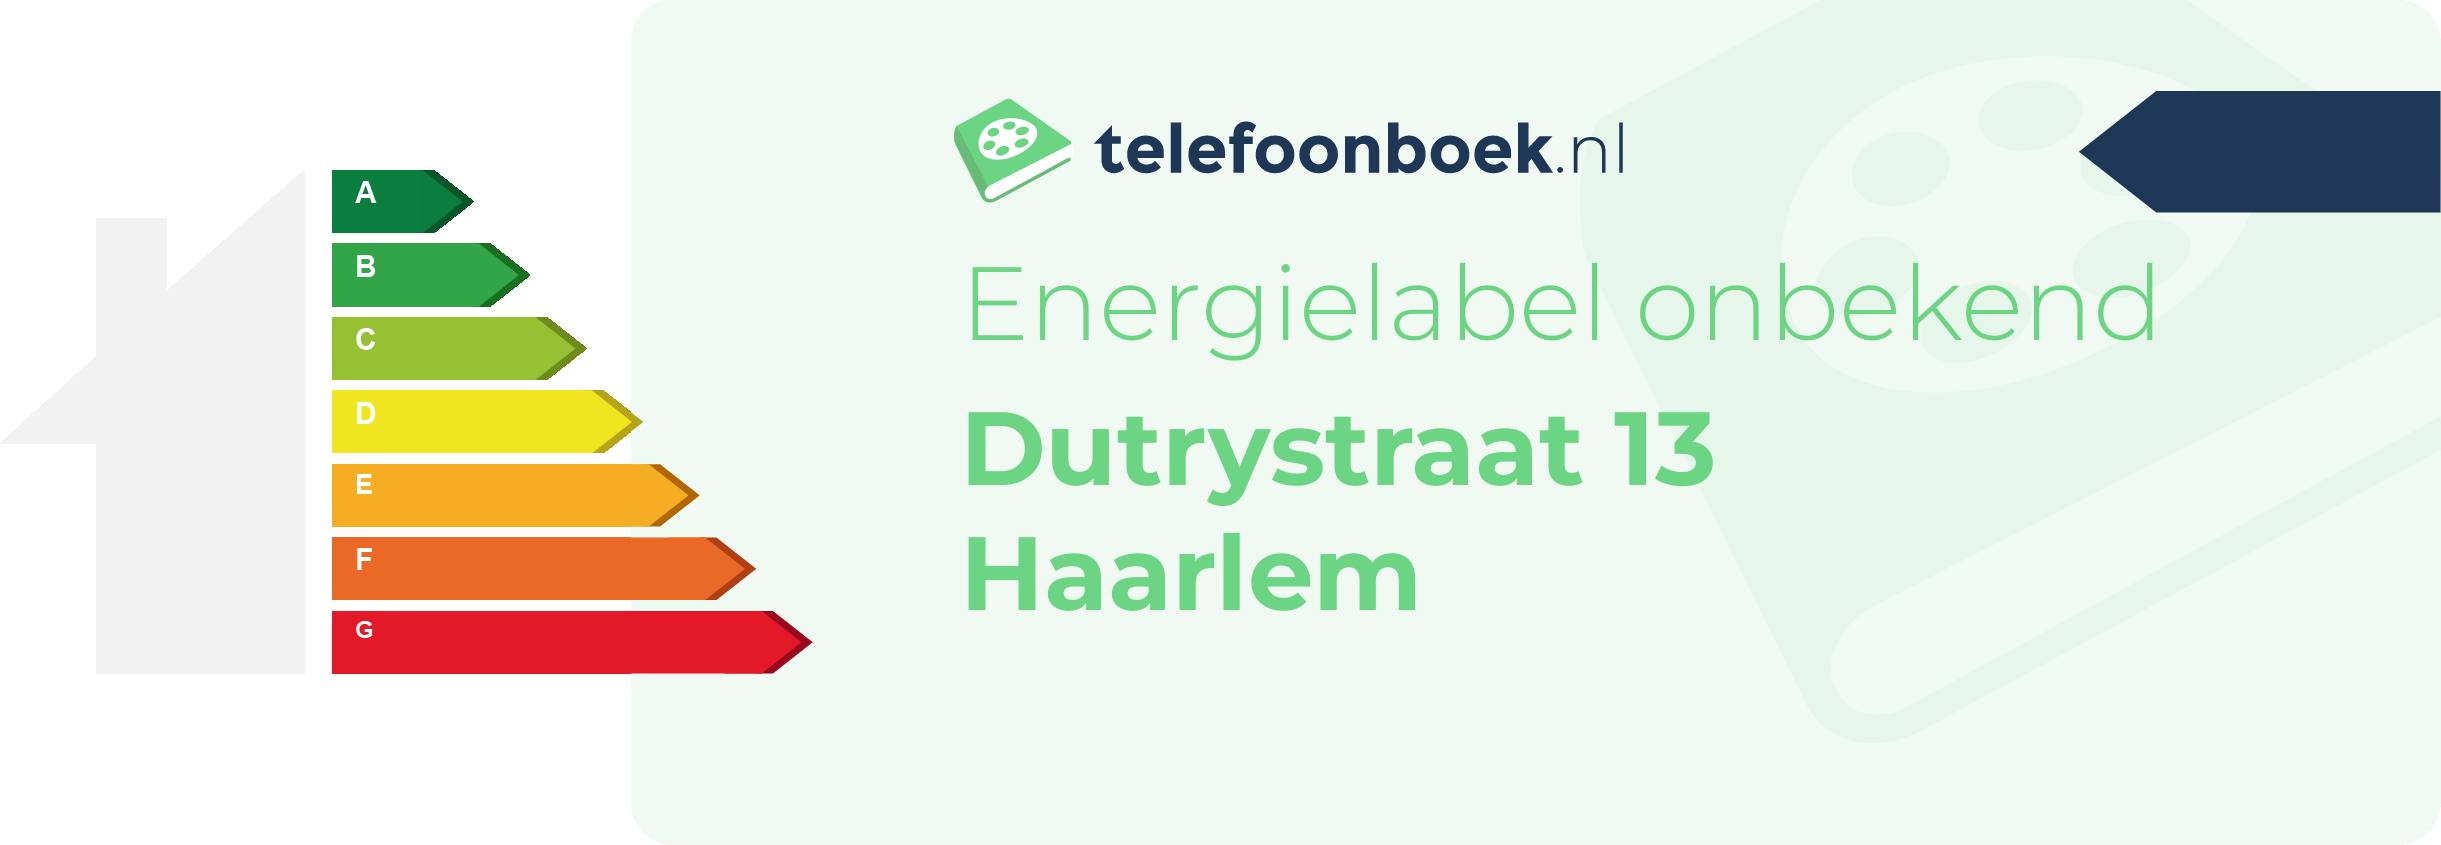 Energielabel Dutrystraat 13 Haarlem